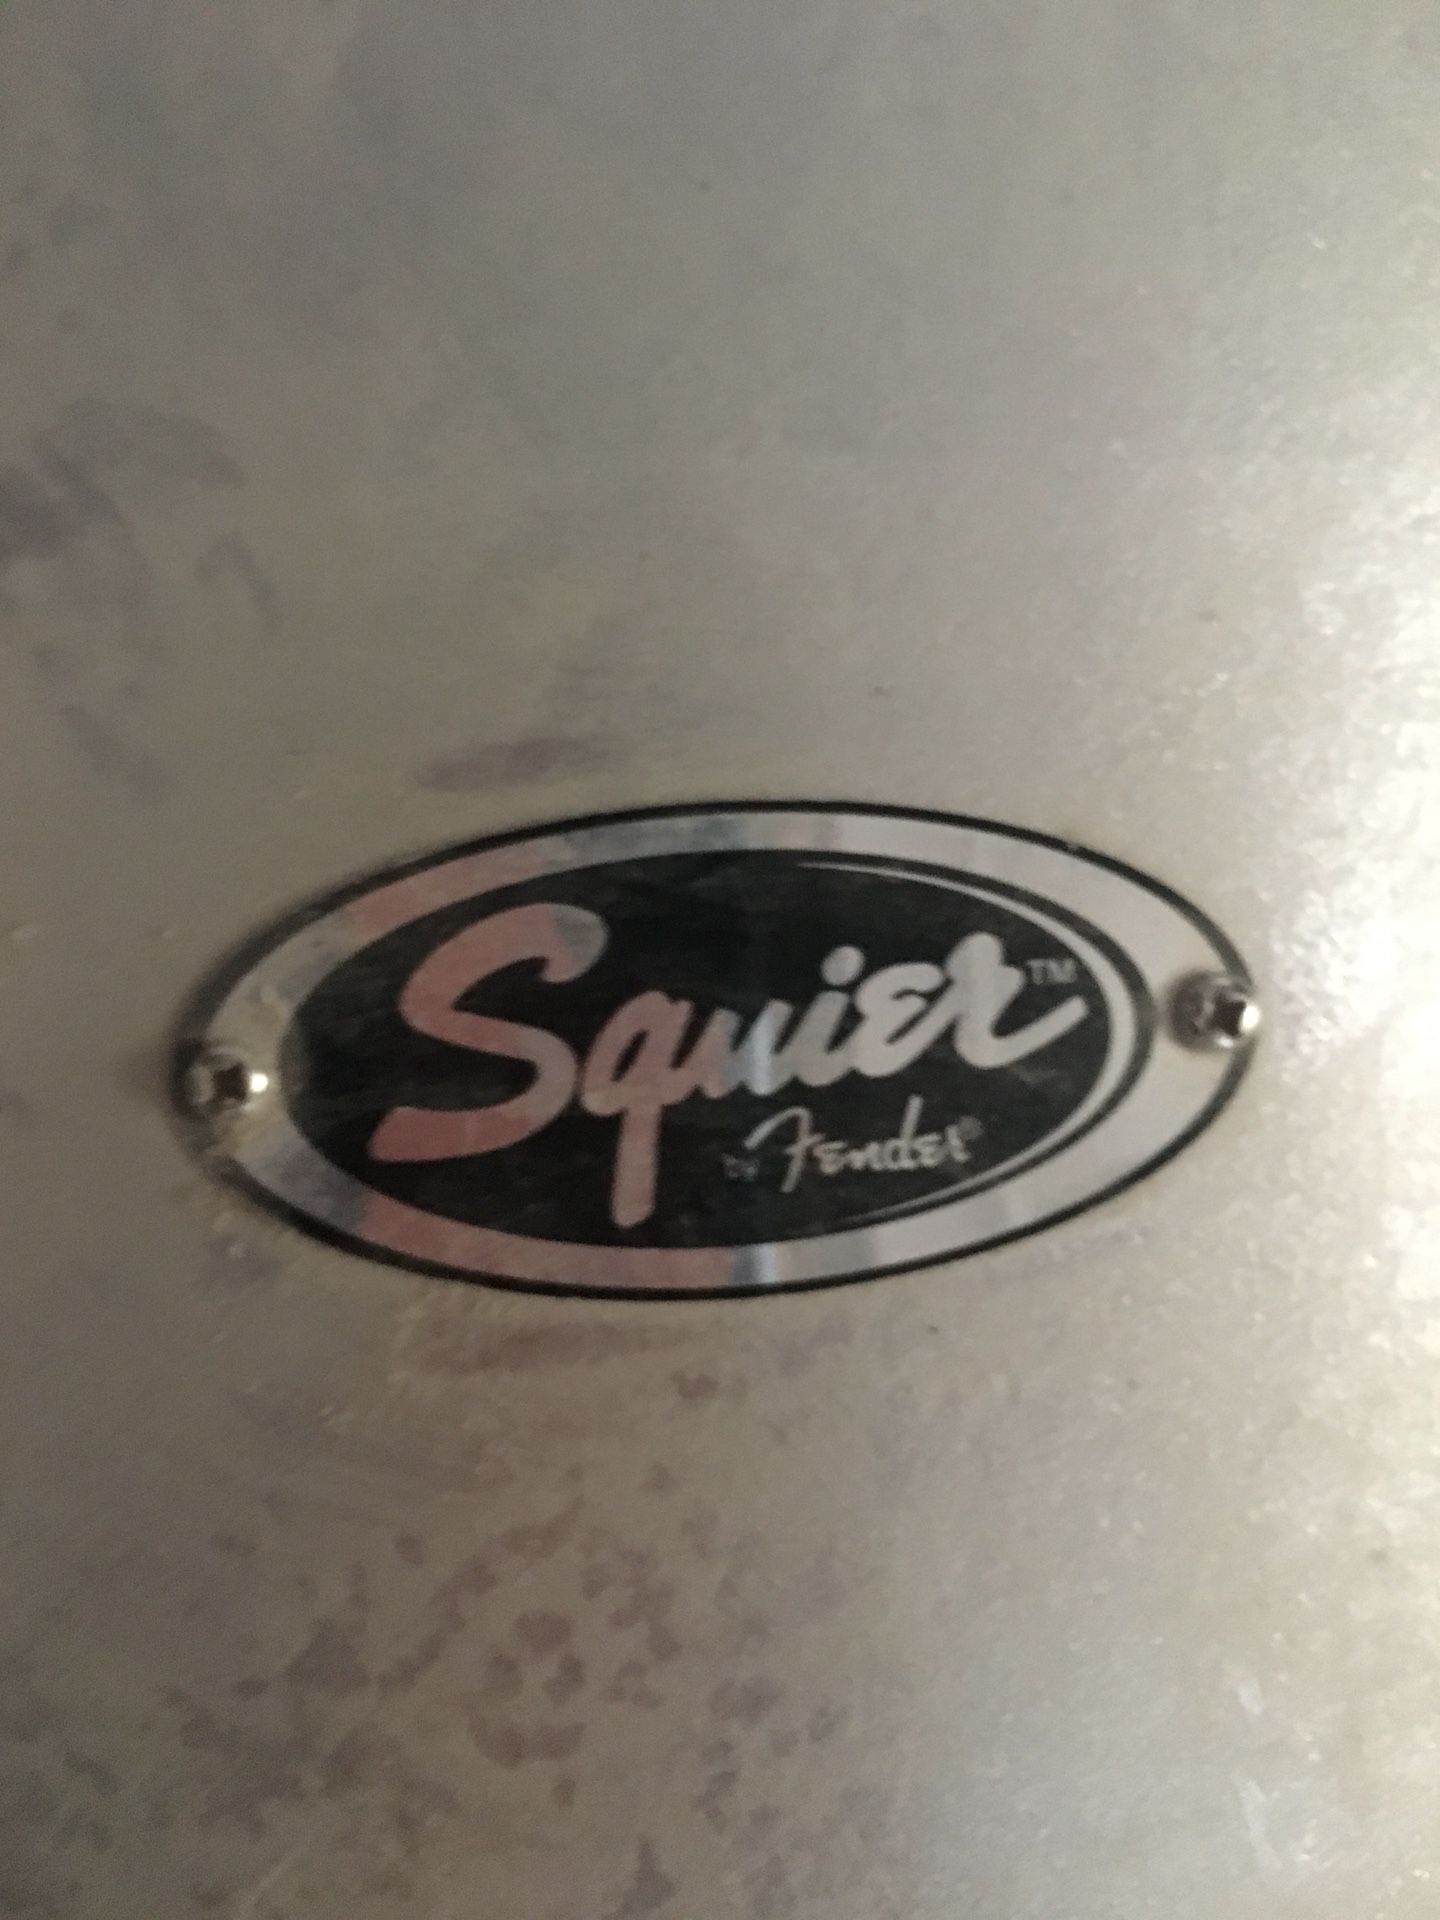 Squier Fender Drum Set